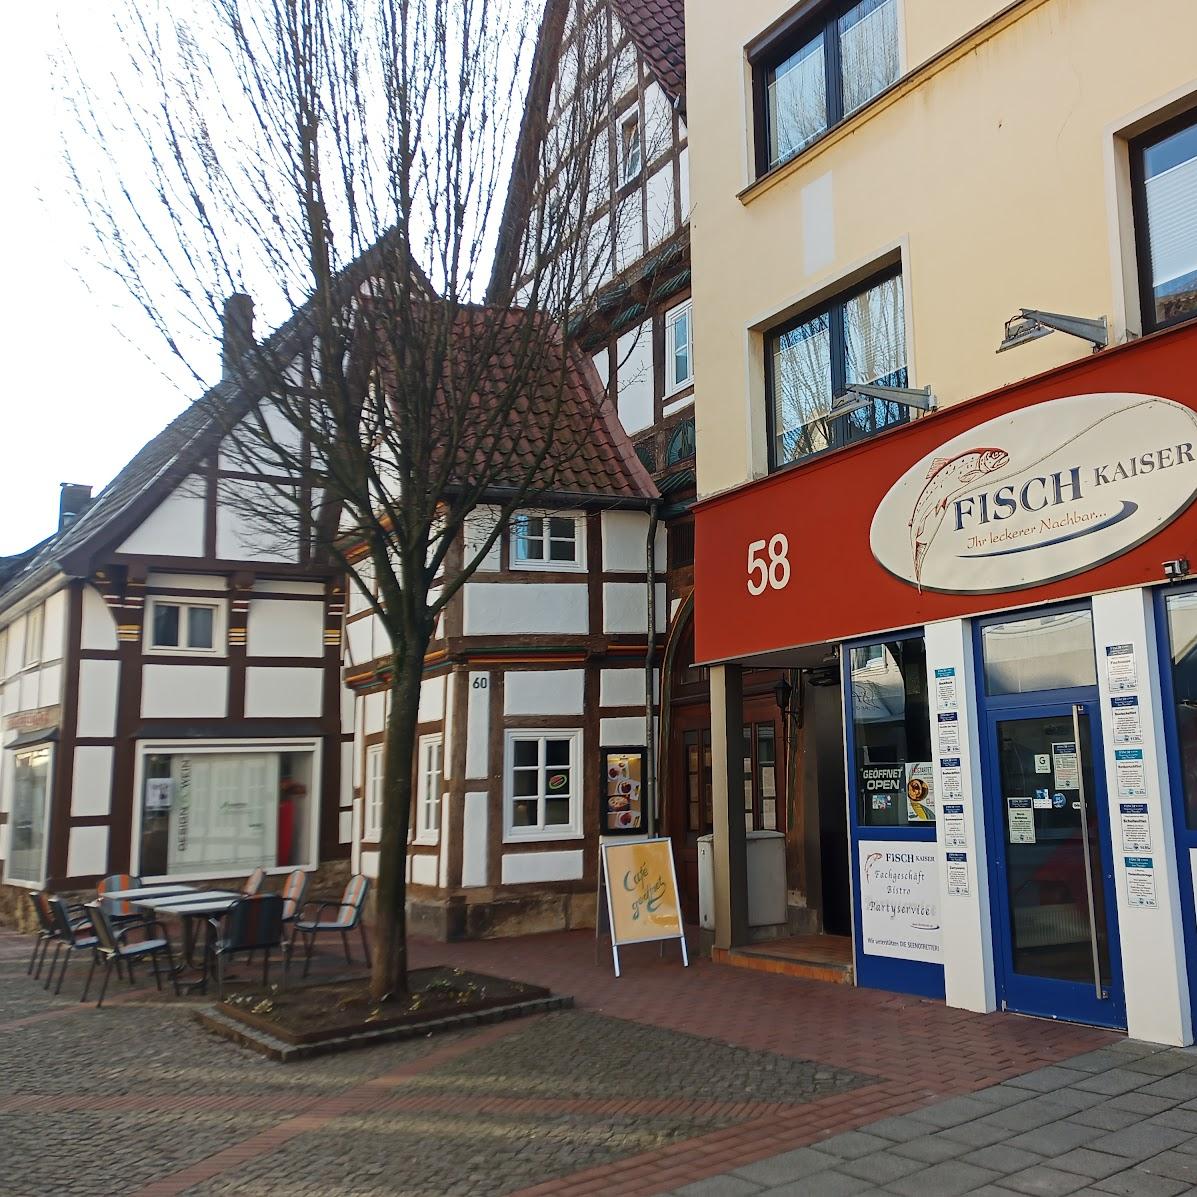 Restaurant "Fisch Kaiser - Fischfachgeschäft, Fischbrötchen, Fischbistro" in Hessisch Oldendorf